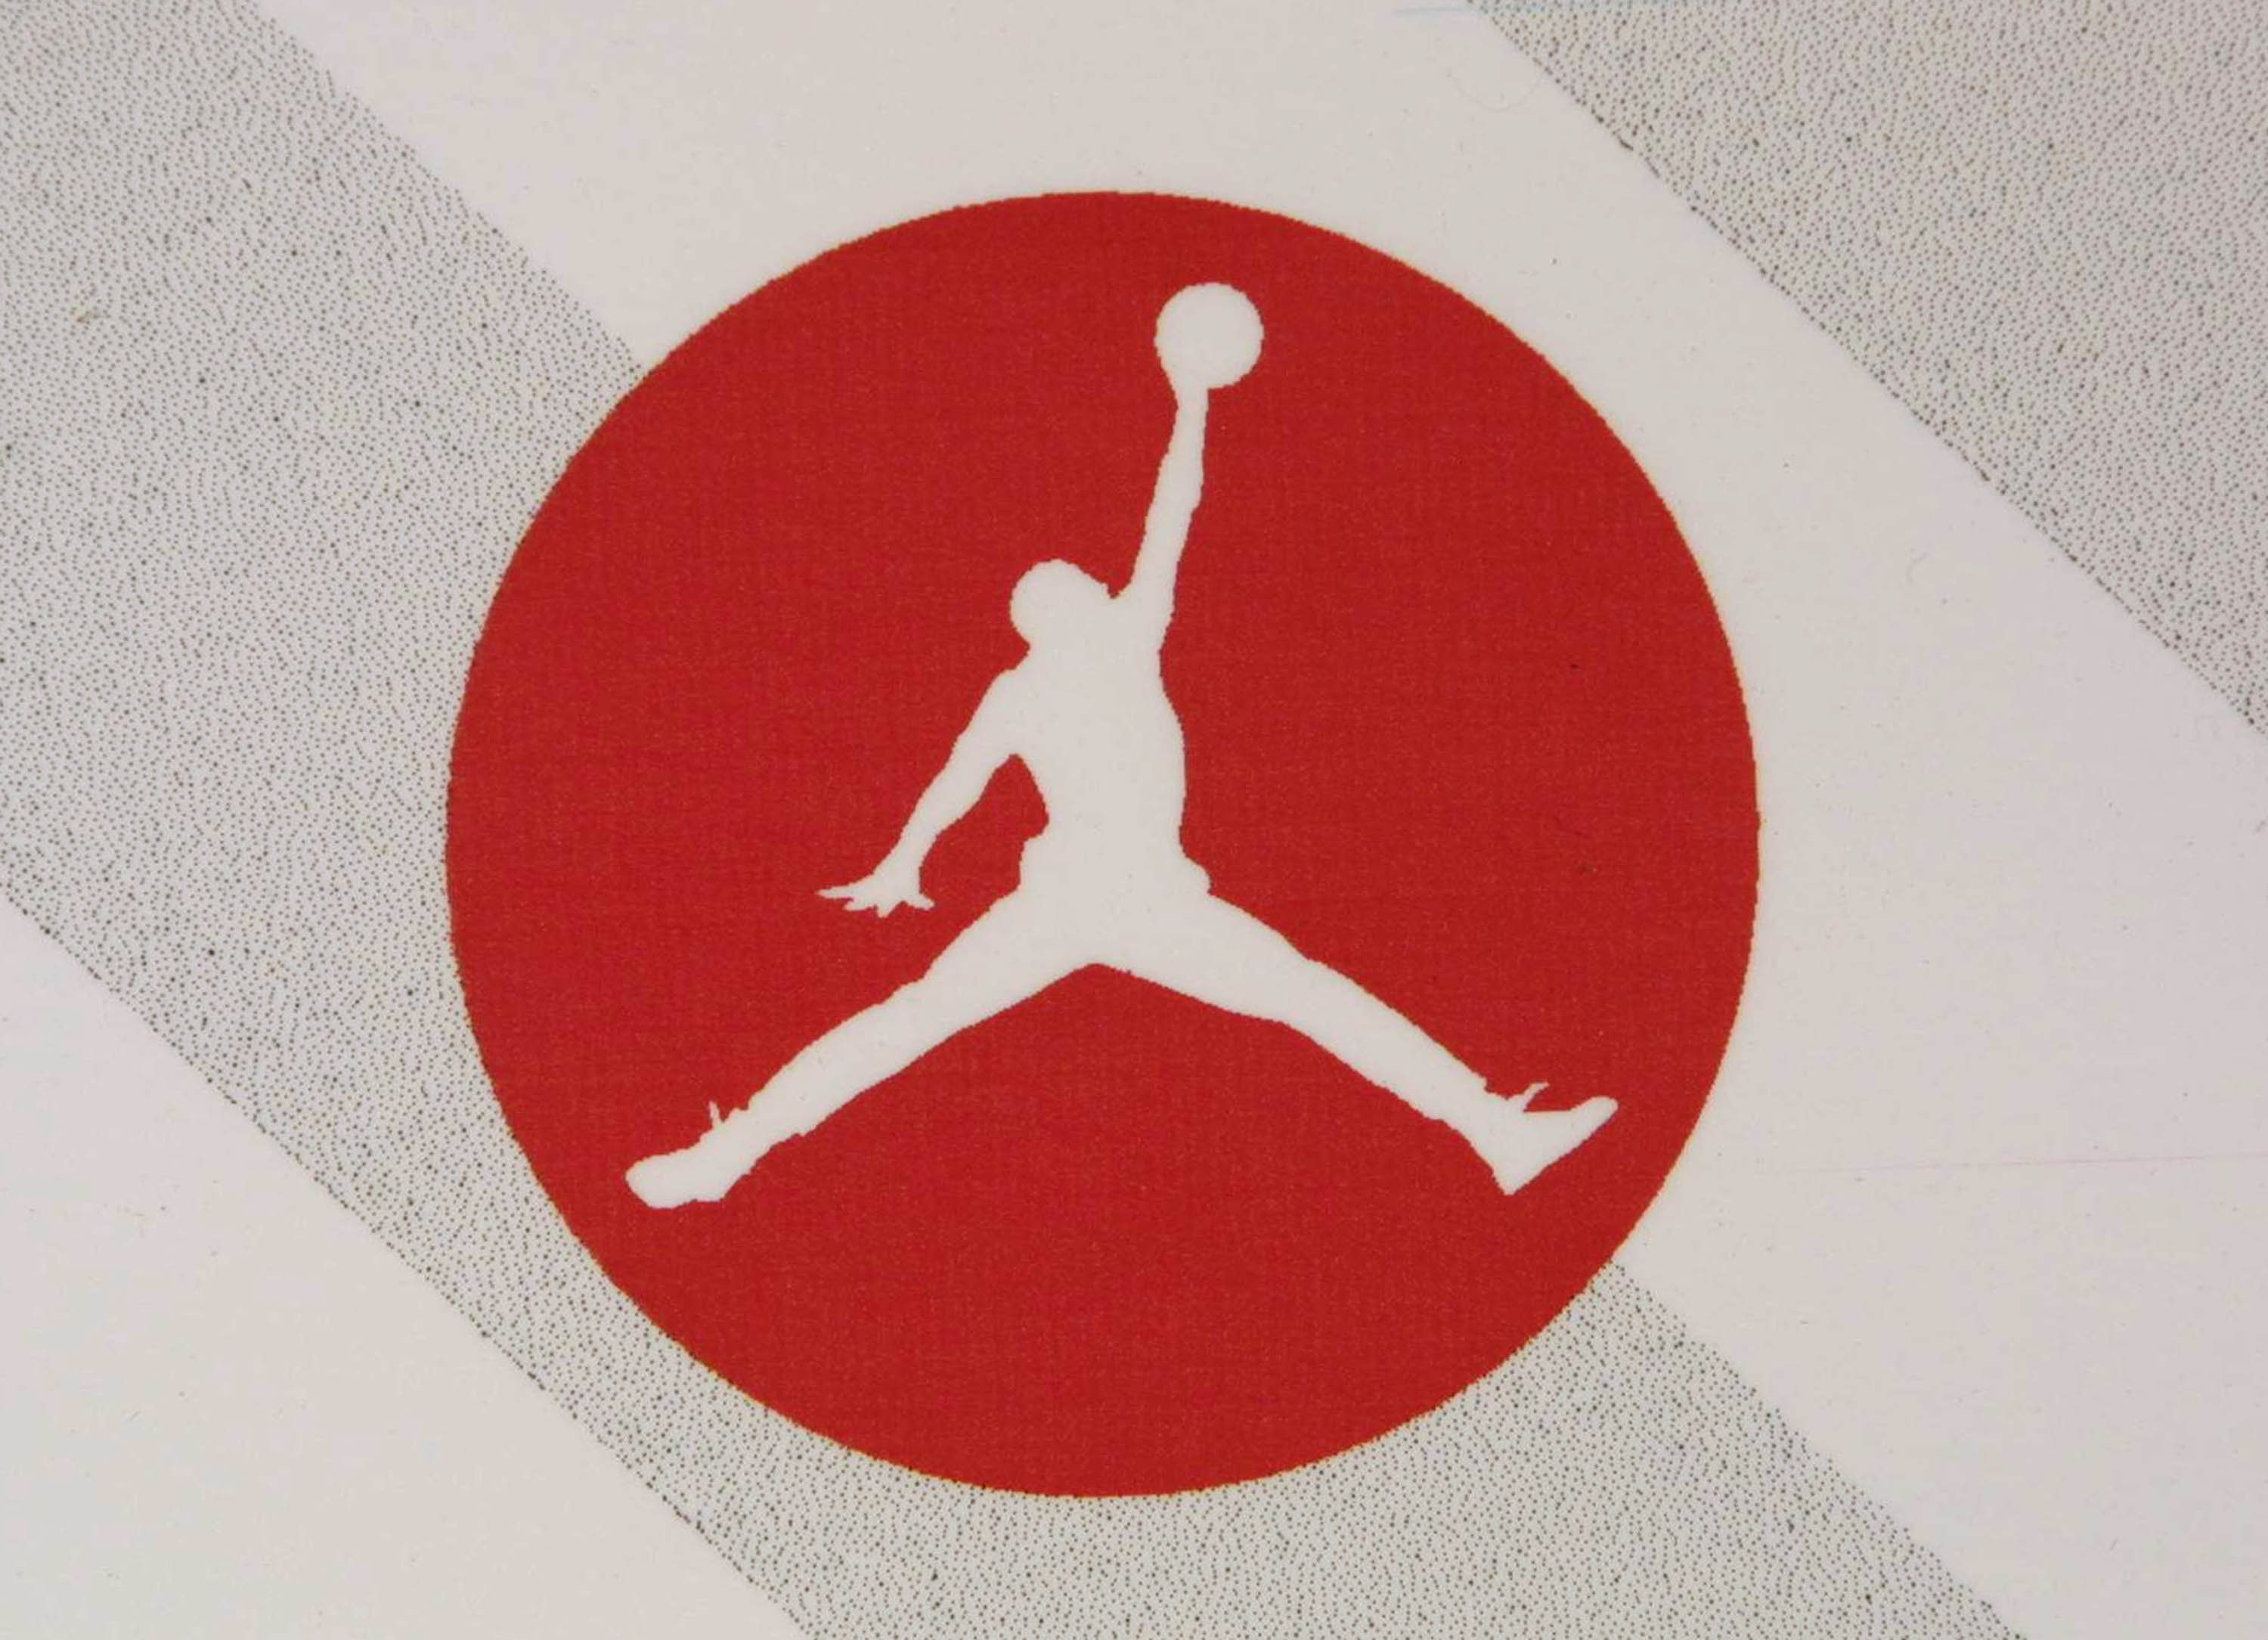 Air Jordan 13 “Black Flint” Rumored Release Date Revealed